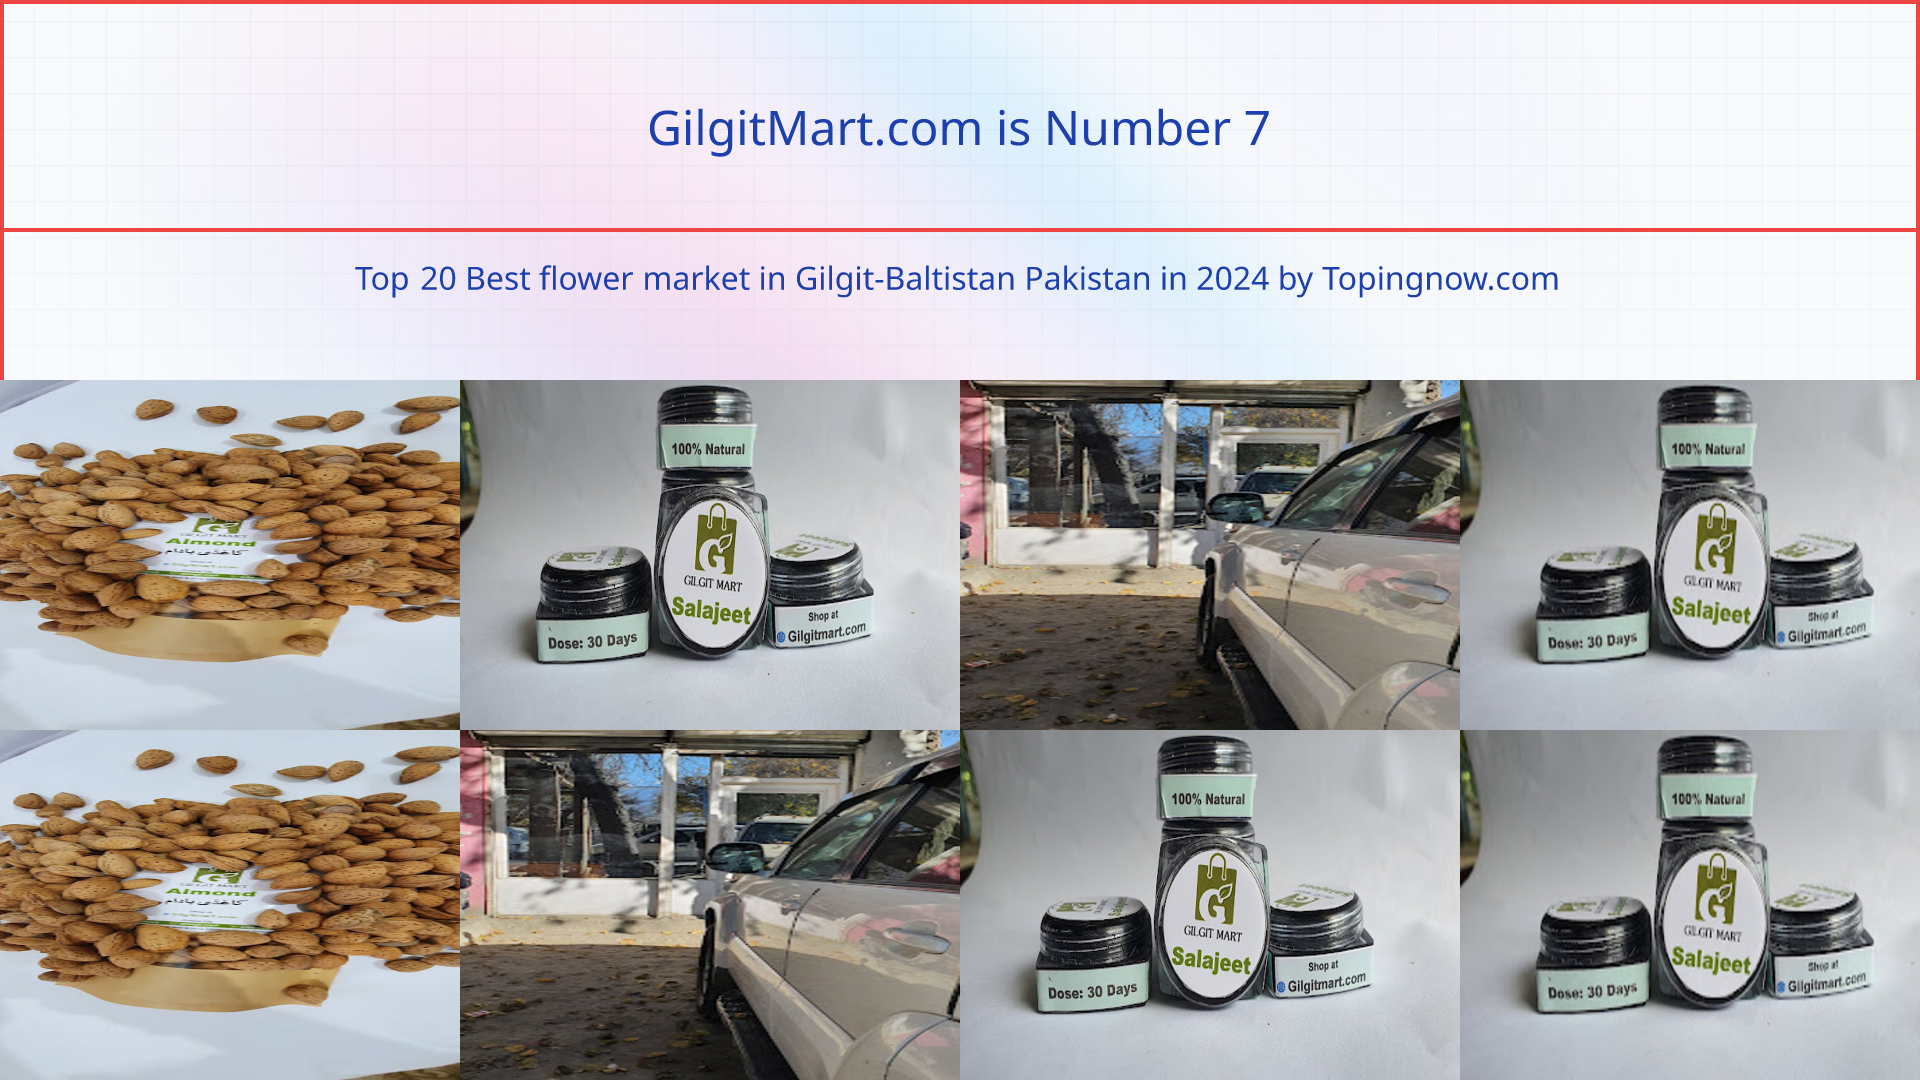 GilgitMart.com: Top 20 Best flower market in Gilgit-Baltistan Pakistan in 2024